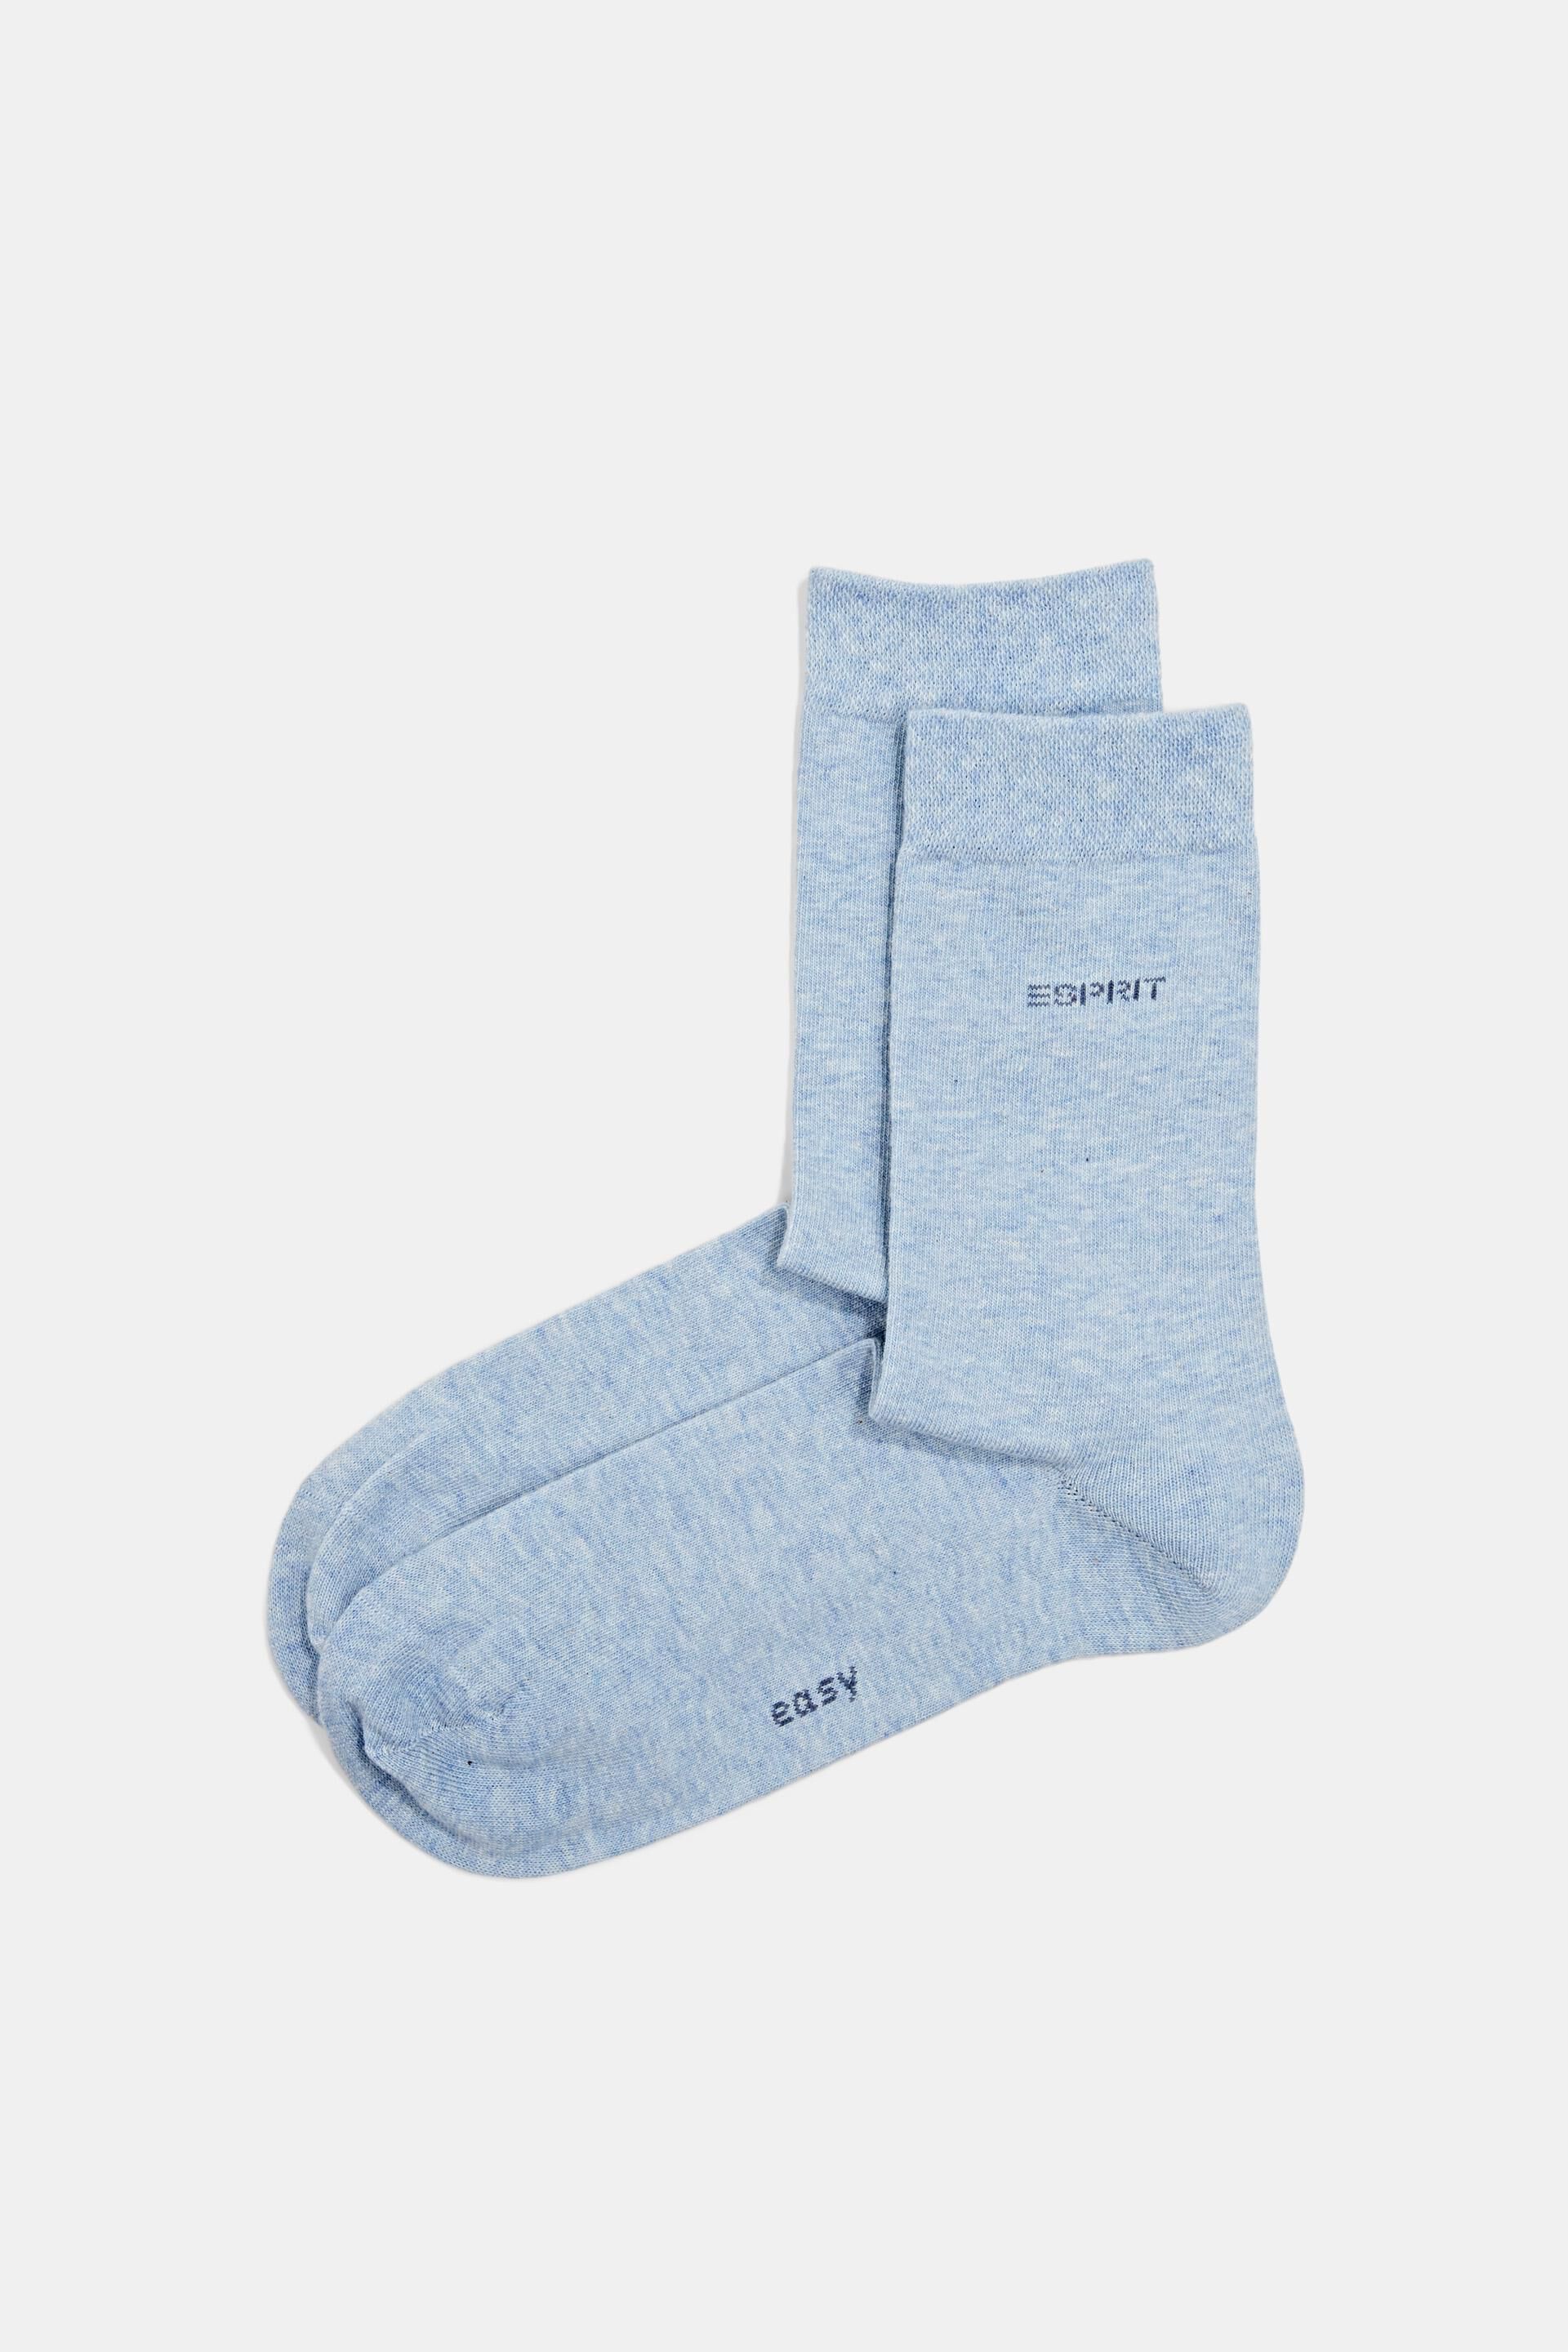 Esprit Online Store Doppelpack Socken aus gemischter Bio-Baumwolle